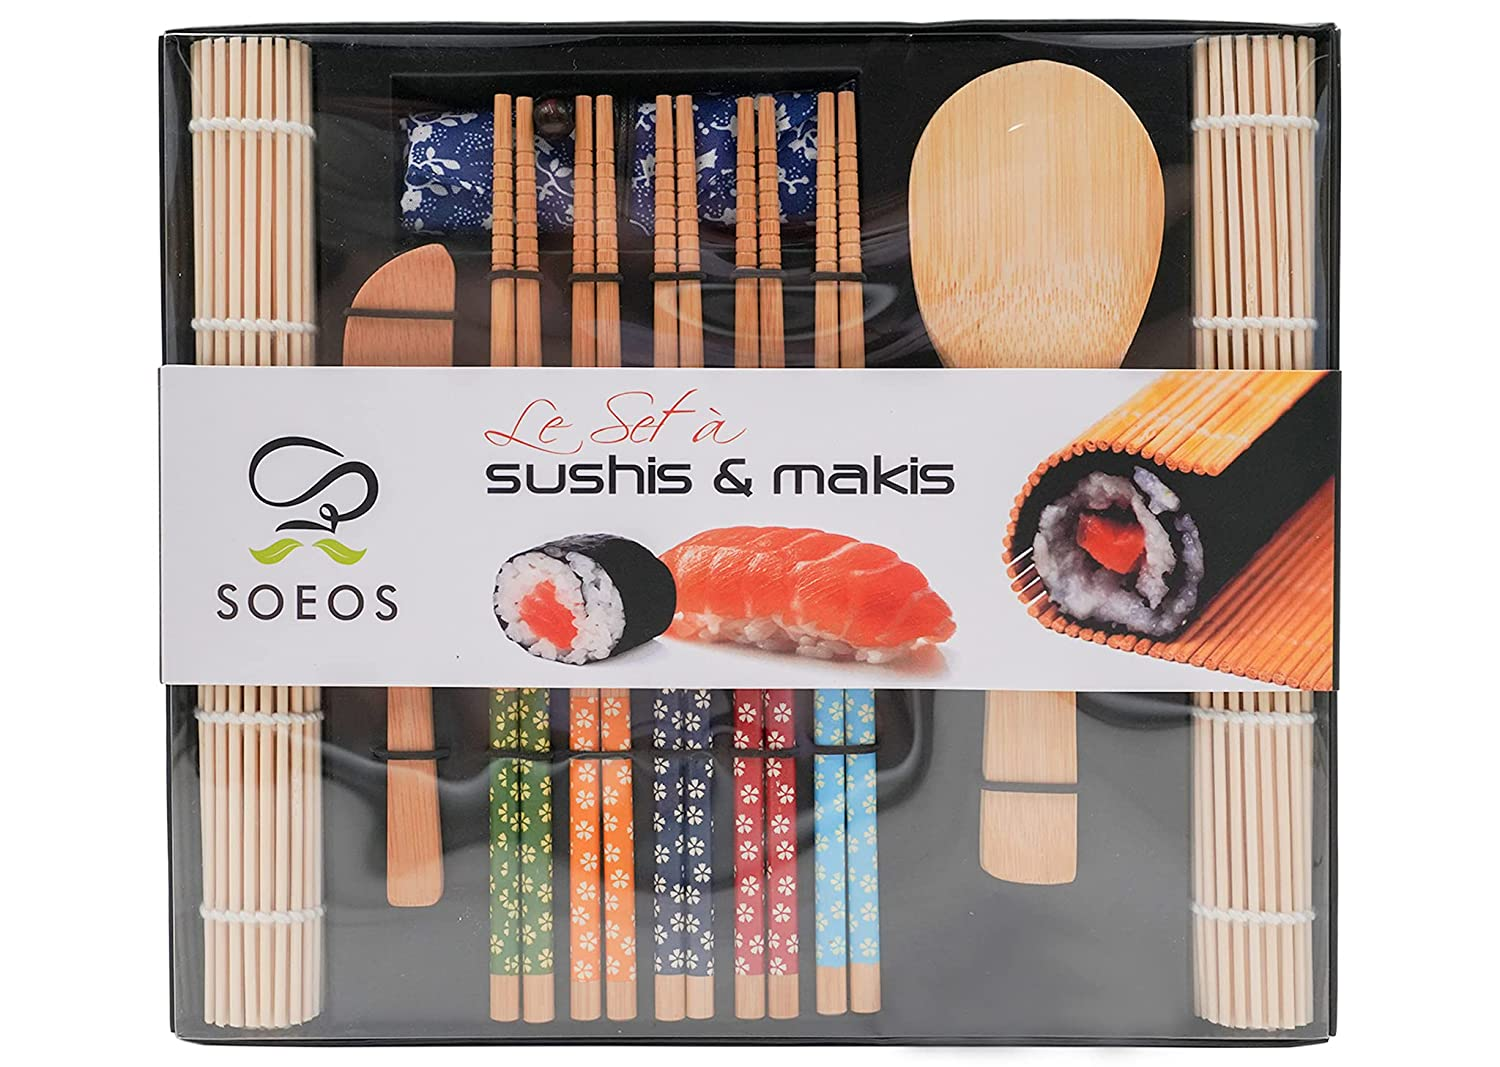 10PC Sushi Making Kit